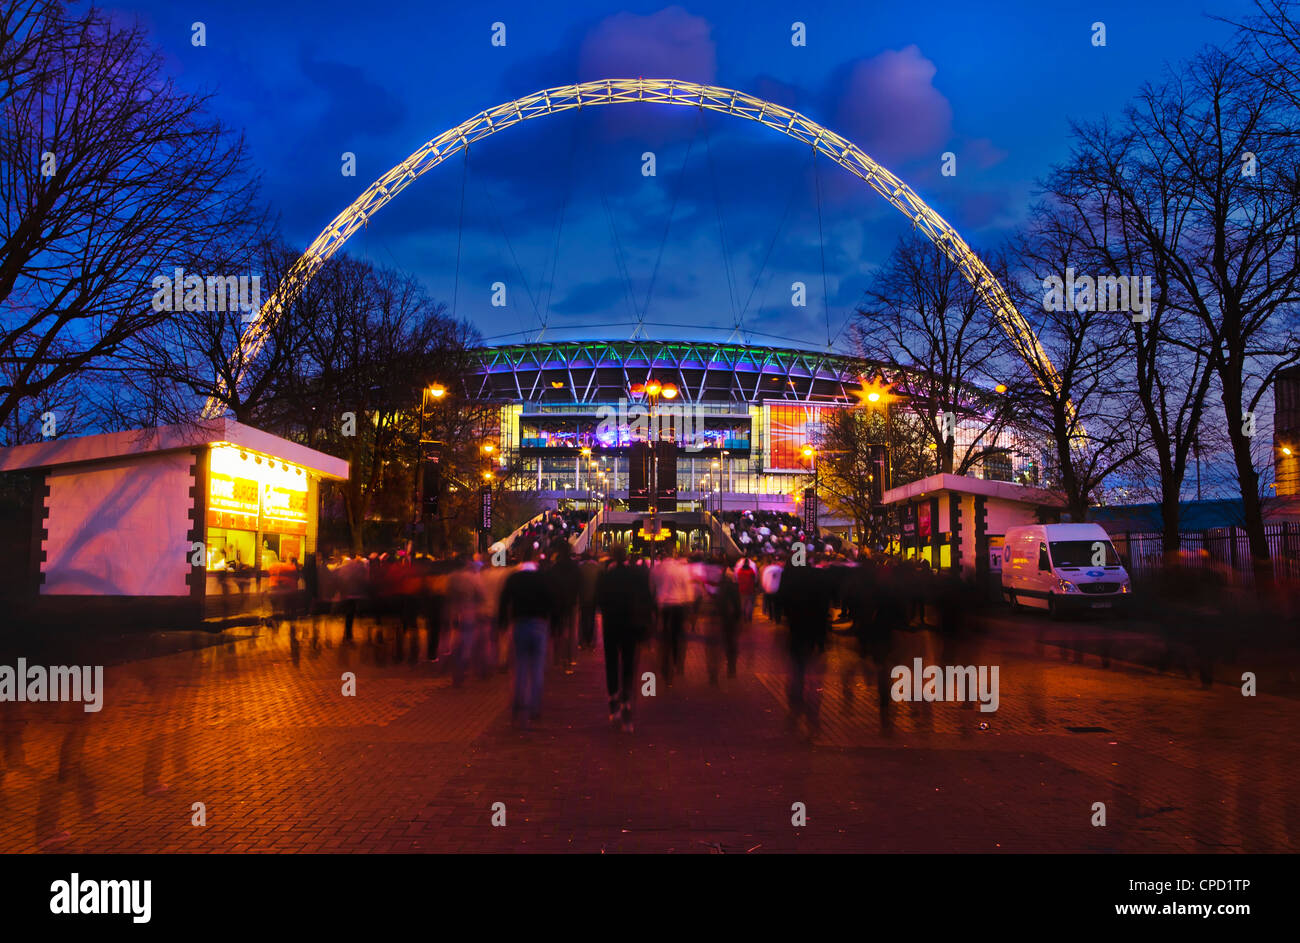 Wembley-Stadion mit England Fans Eingabe des Veranstaltungsorts für internationale Spiel, London, England, Vereinigtes Königreich, Europa Stockfoto